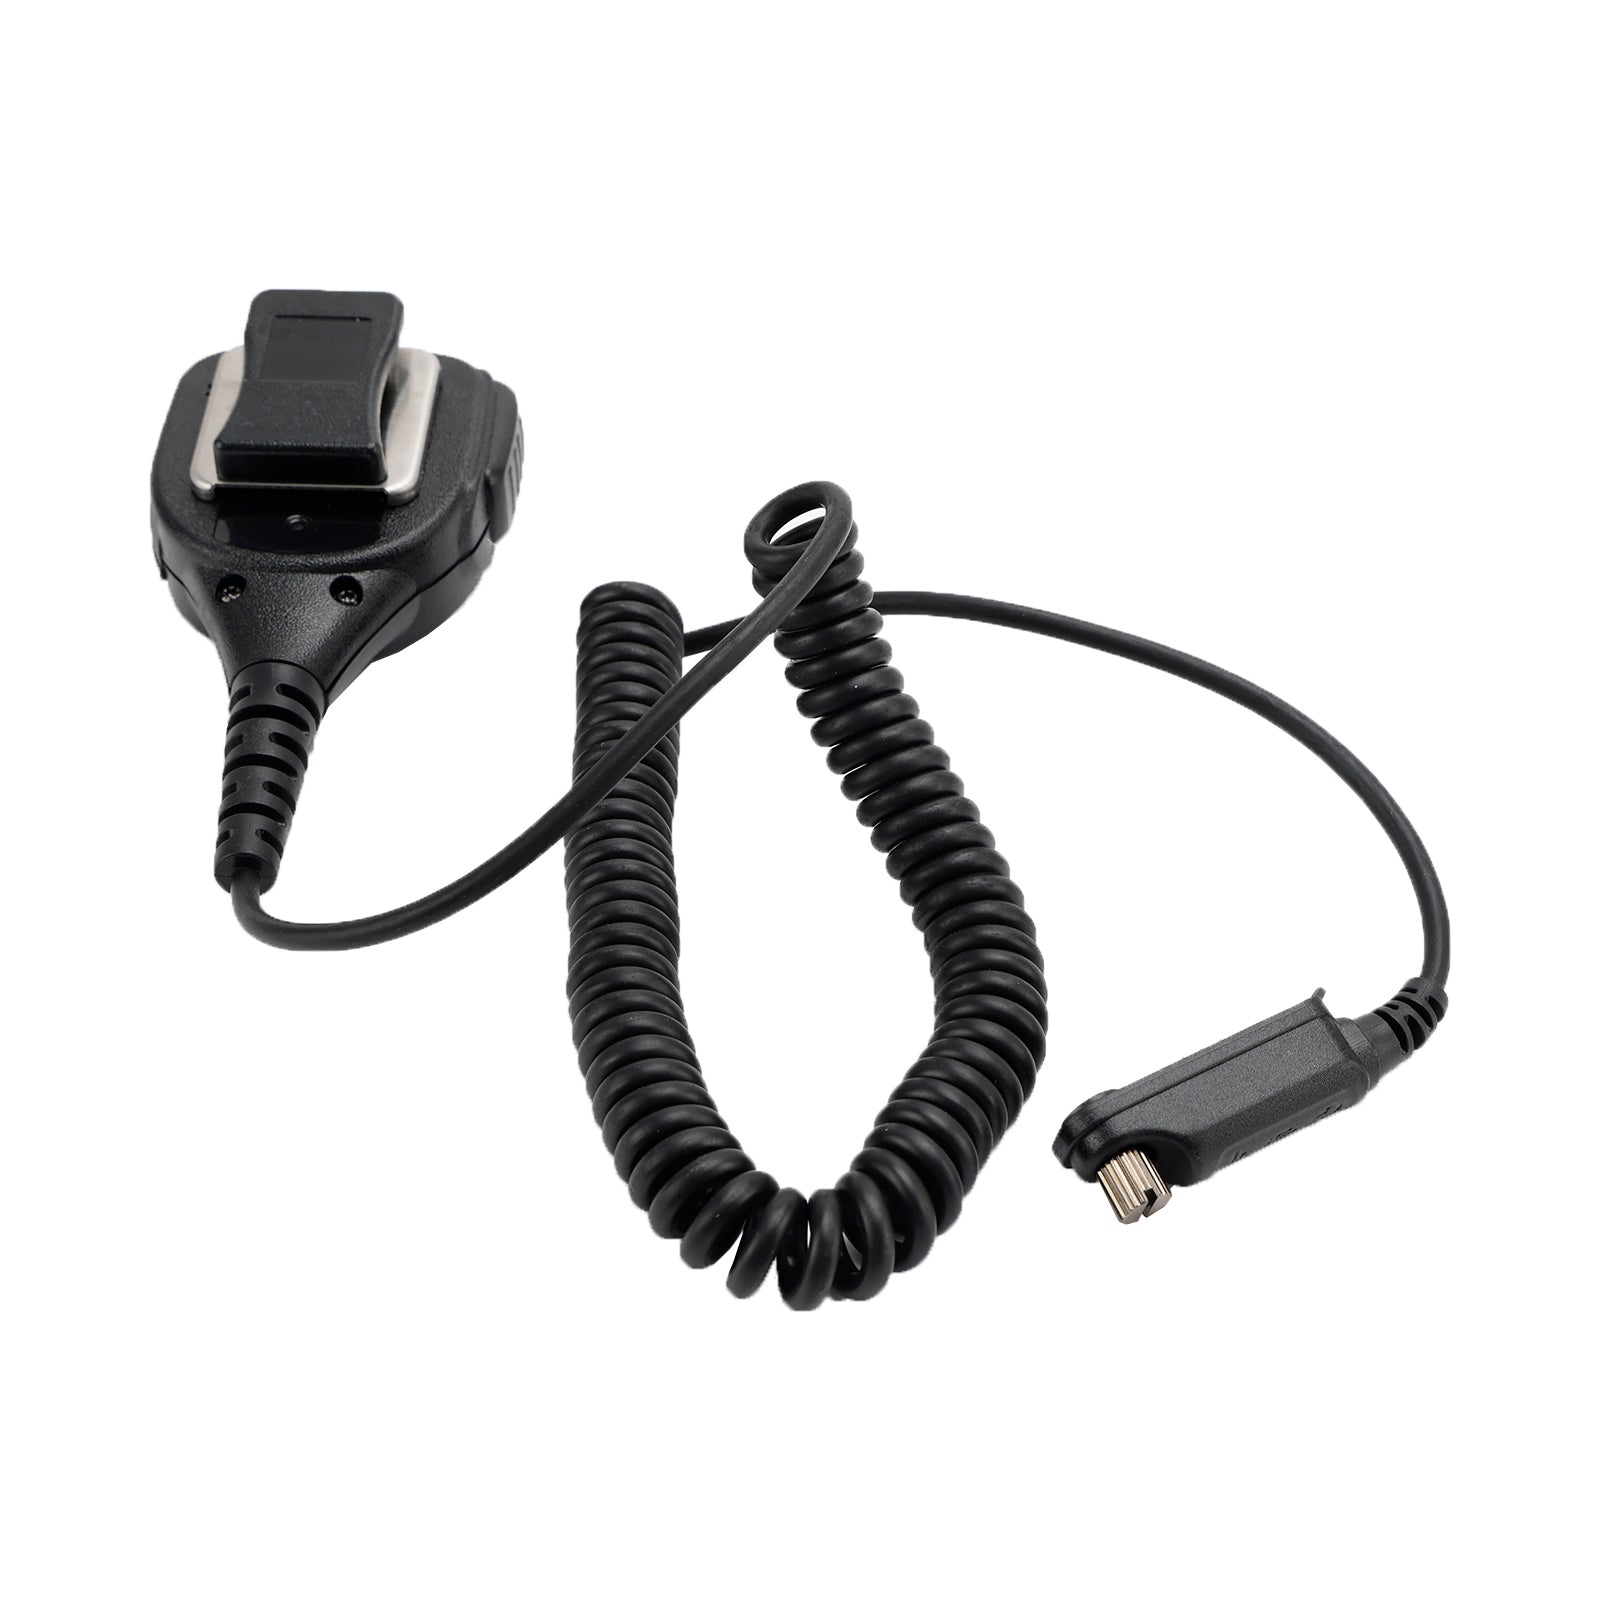 Altoparlante microfono portatile PH790-SM08 compatibile con la radio walkie-talkie Caltta PH790